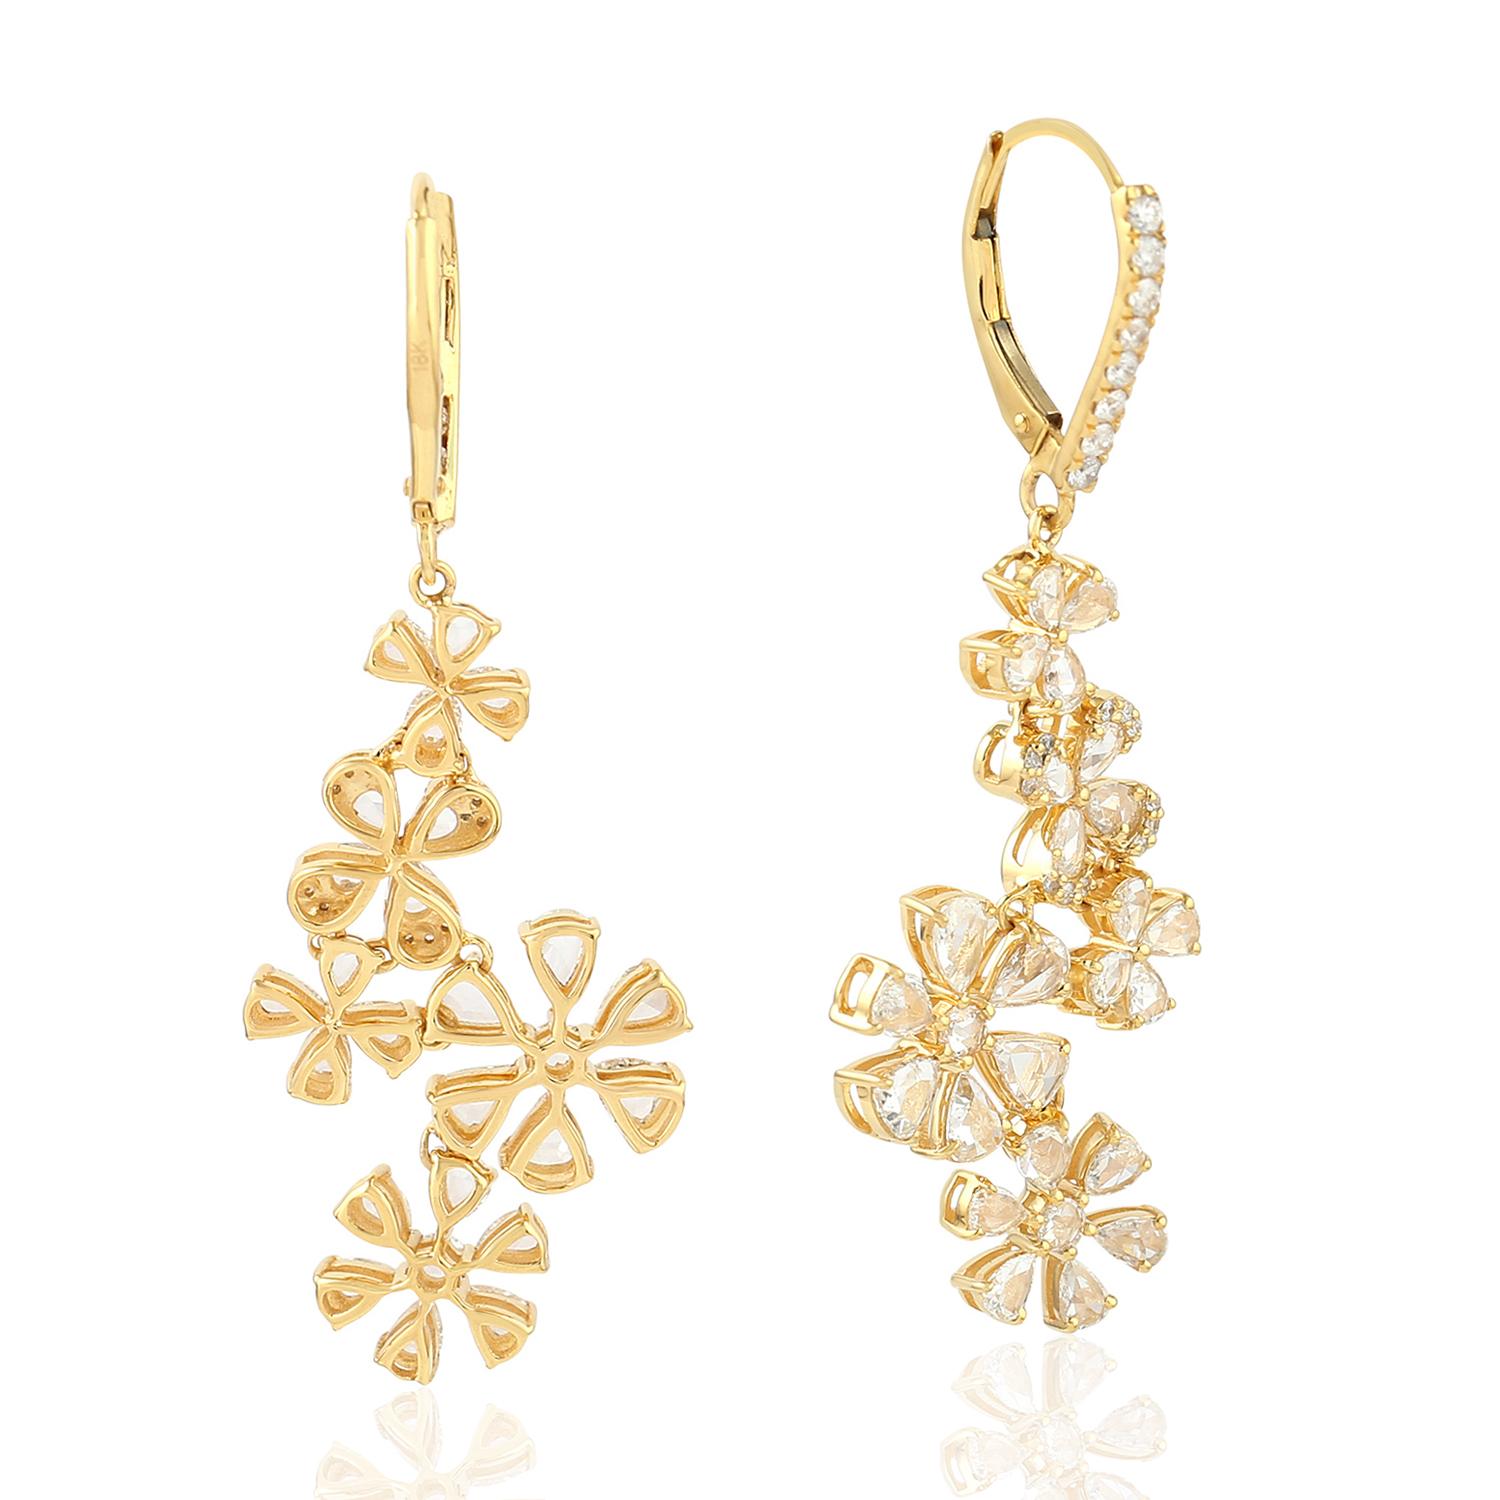 Diese wunderschönen Ohrringe sind aus 18-karätigem Gold handgefertigt und mit 2,69 Karat Diamanten im Rosenschliff besetzt. 

FOLGEN  MEGHNA JEWELS Storefront, um die neueste Kollektion und exklusive Stücke zu sehen.  Meghna Jewels ist stolz darauf,